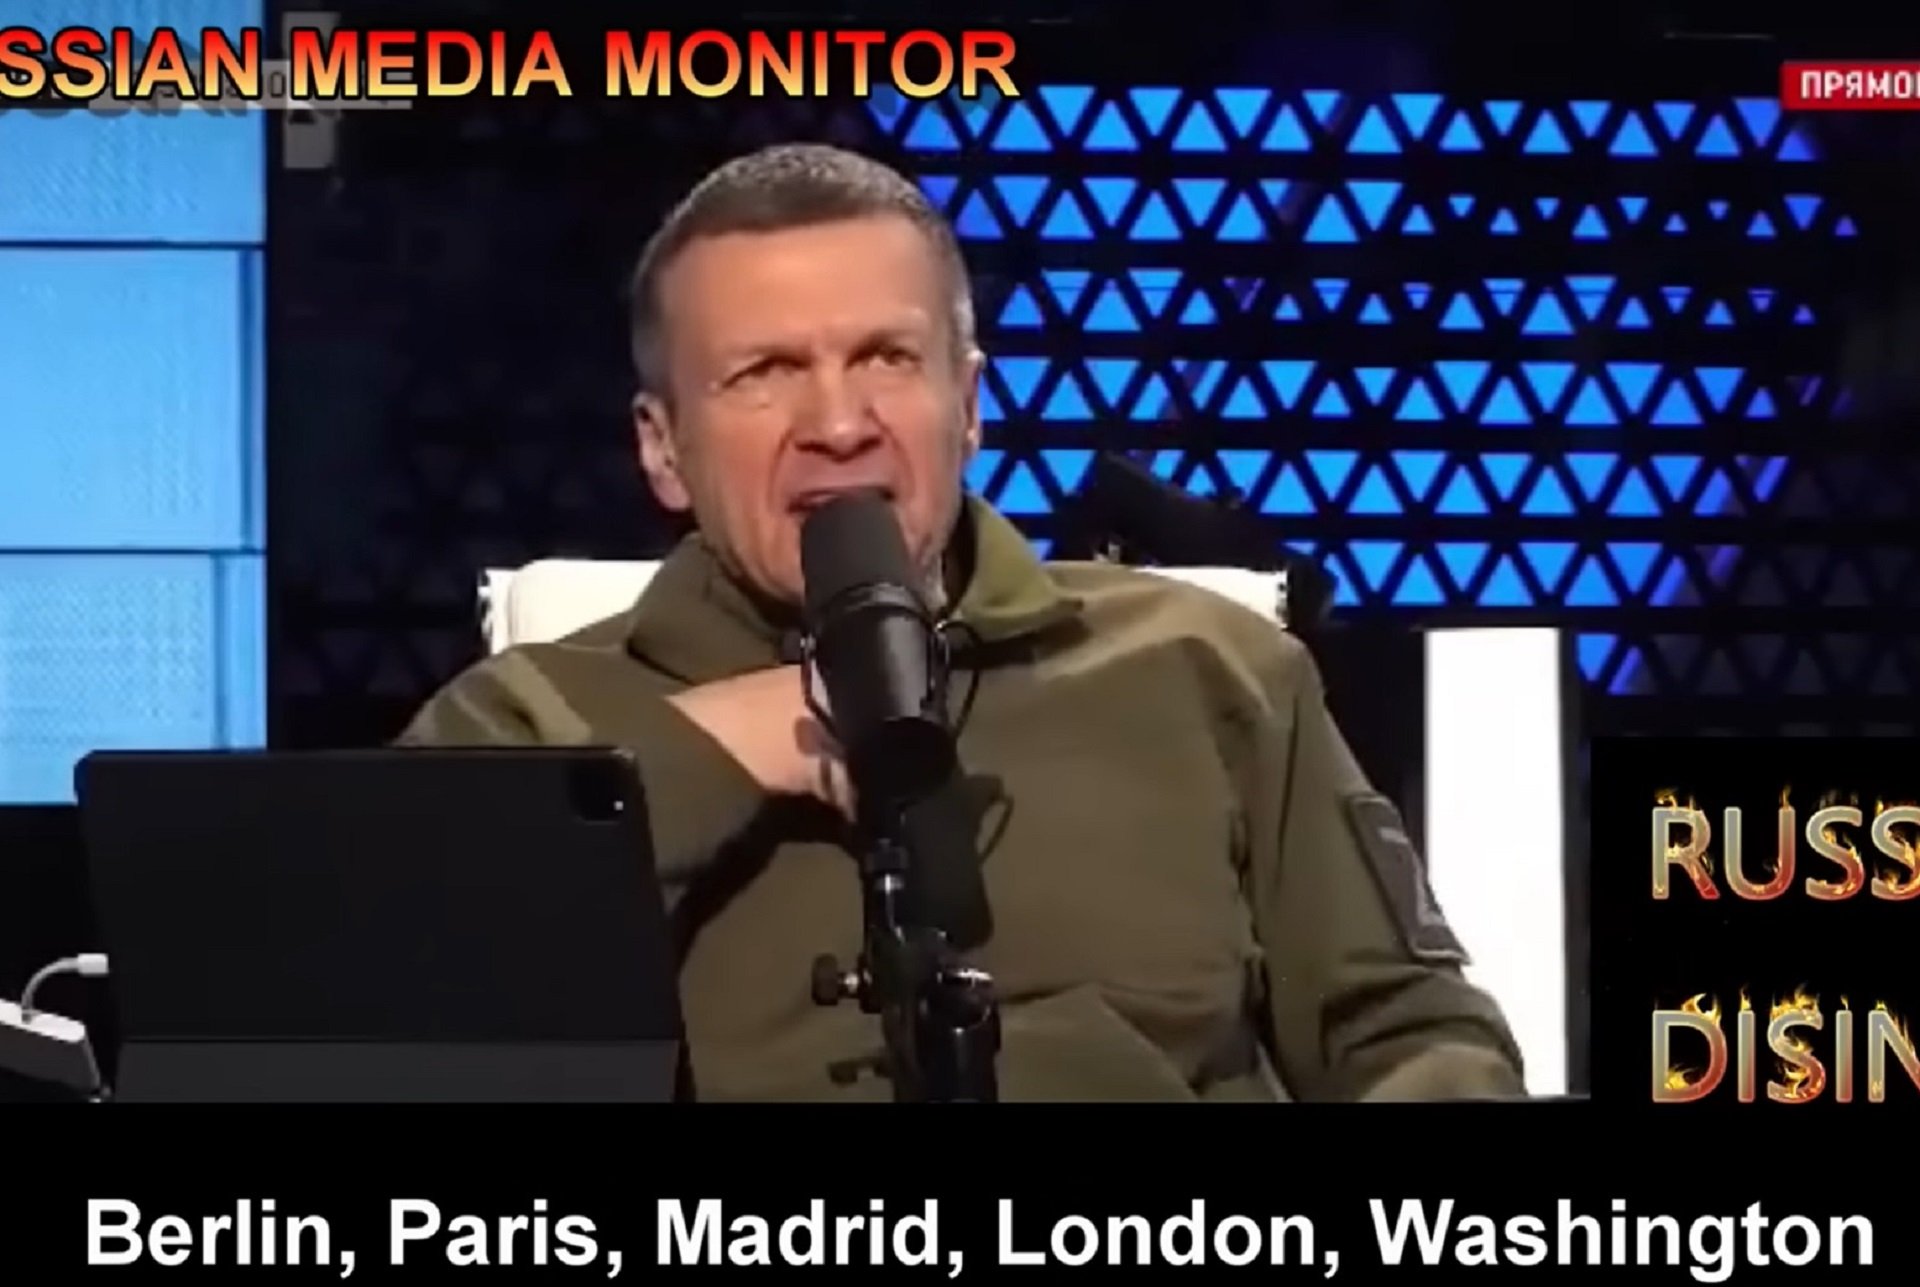 El presentador estrella de la TV rusa pide "quemar Madrid" y otras "capitales nazis"